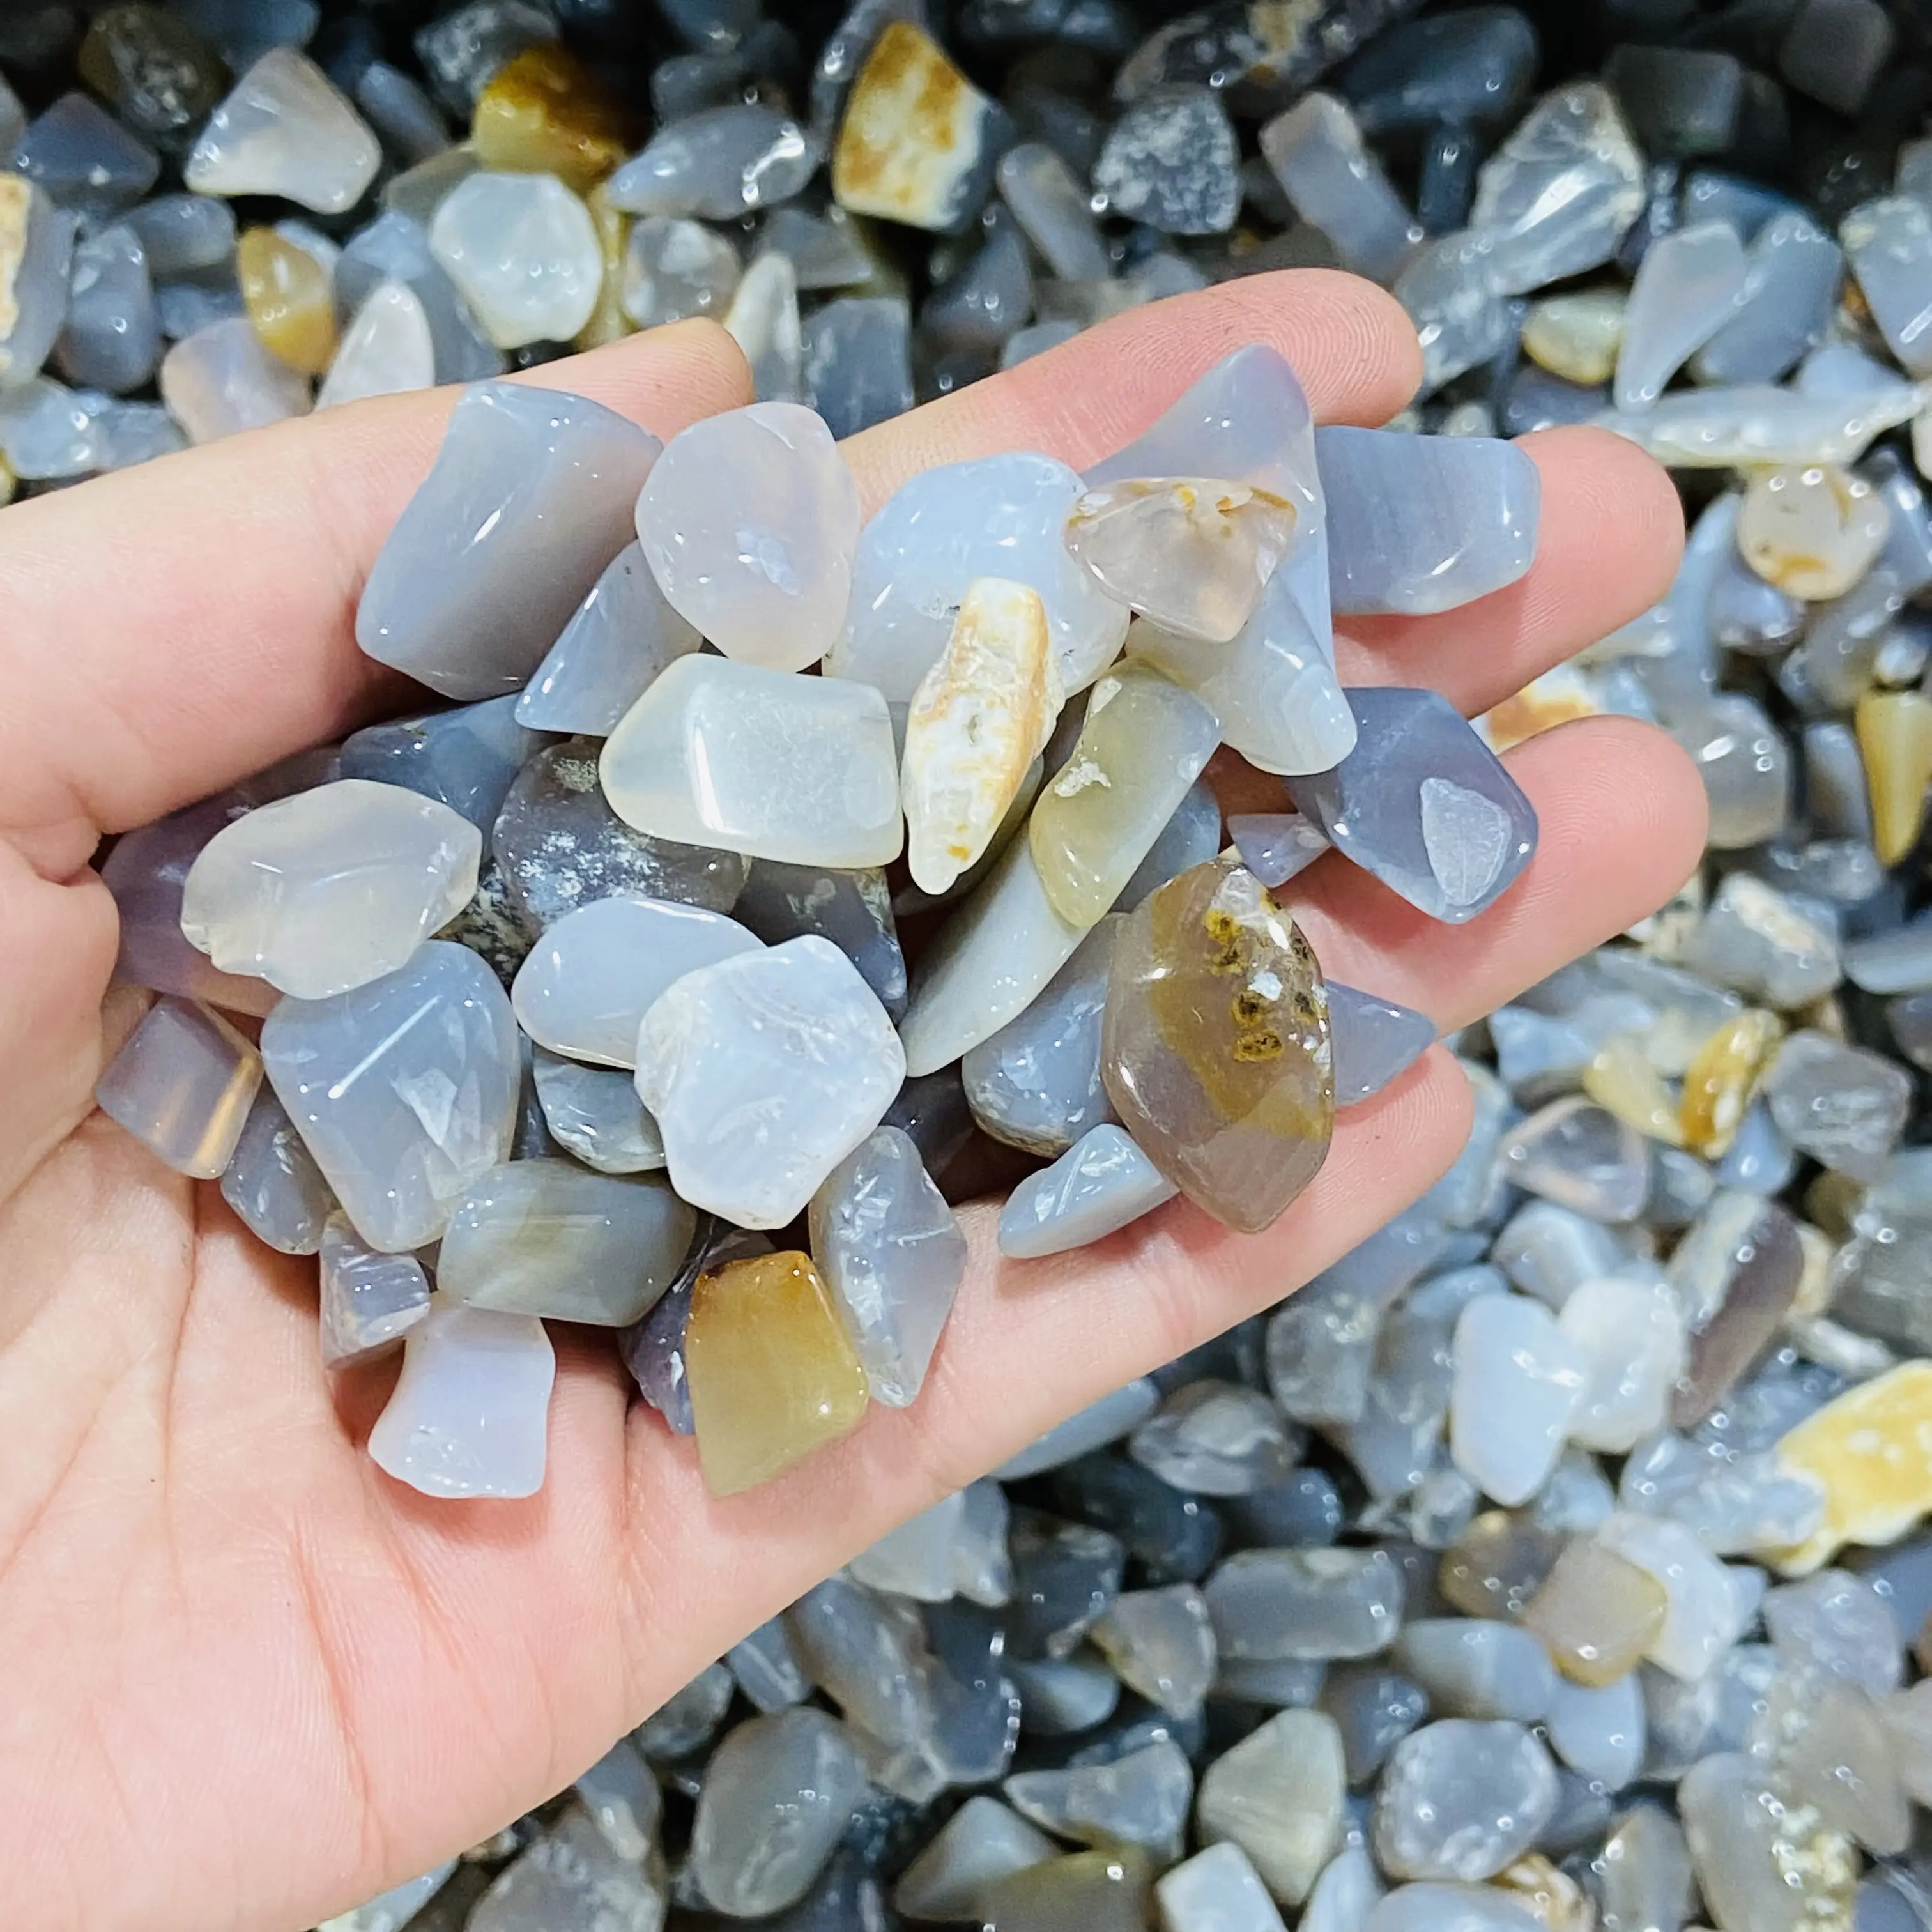 Beste Kwaliteit Natuurlijke Kristallen Healing Stenen Agaat Getrommeld Fengshui En Healing Crystal Steen Voor Decoratie En Geschenken